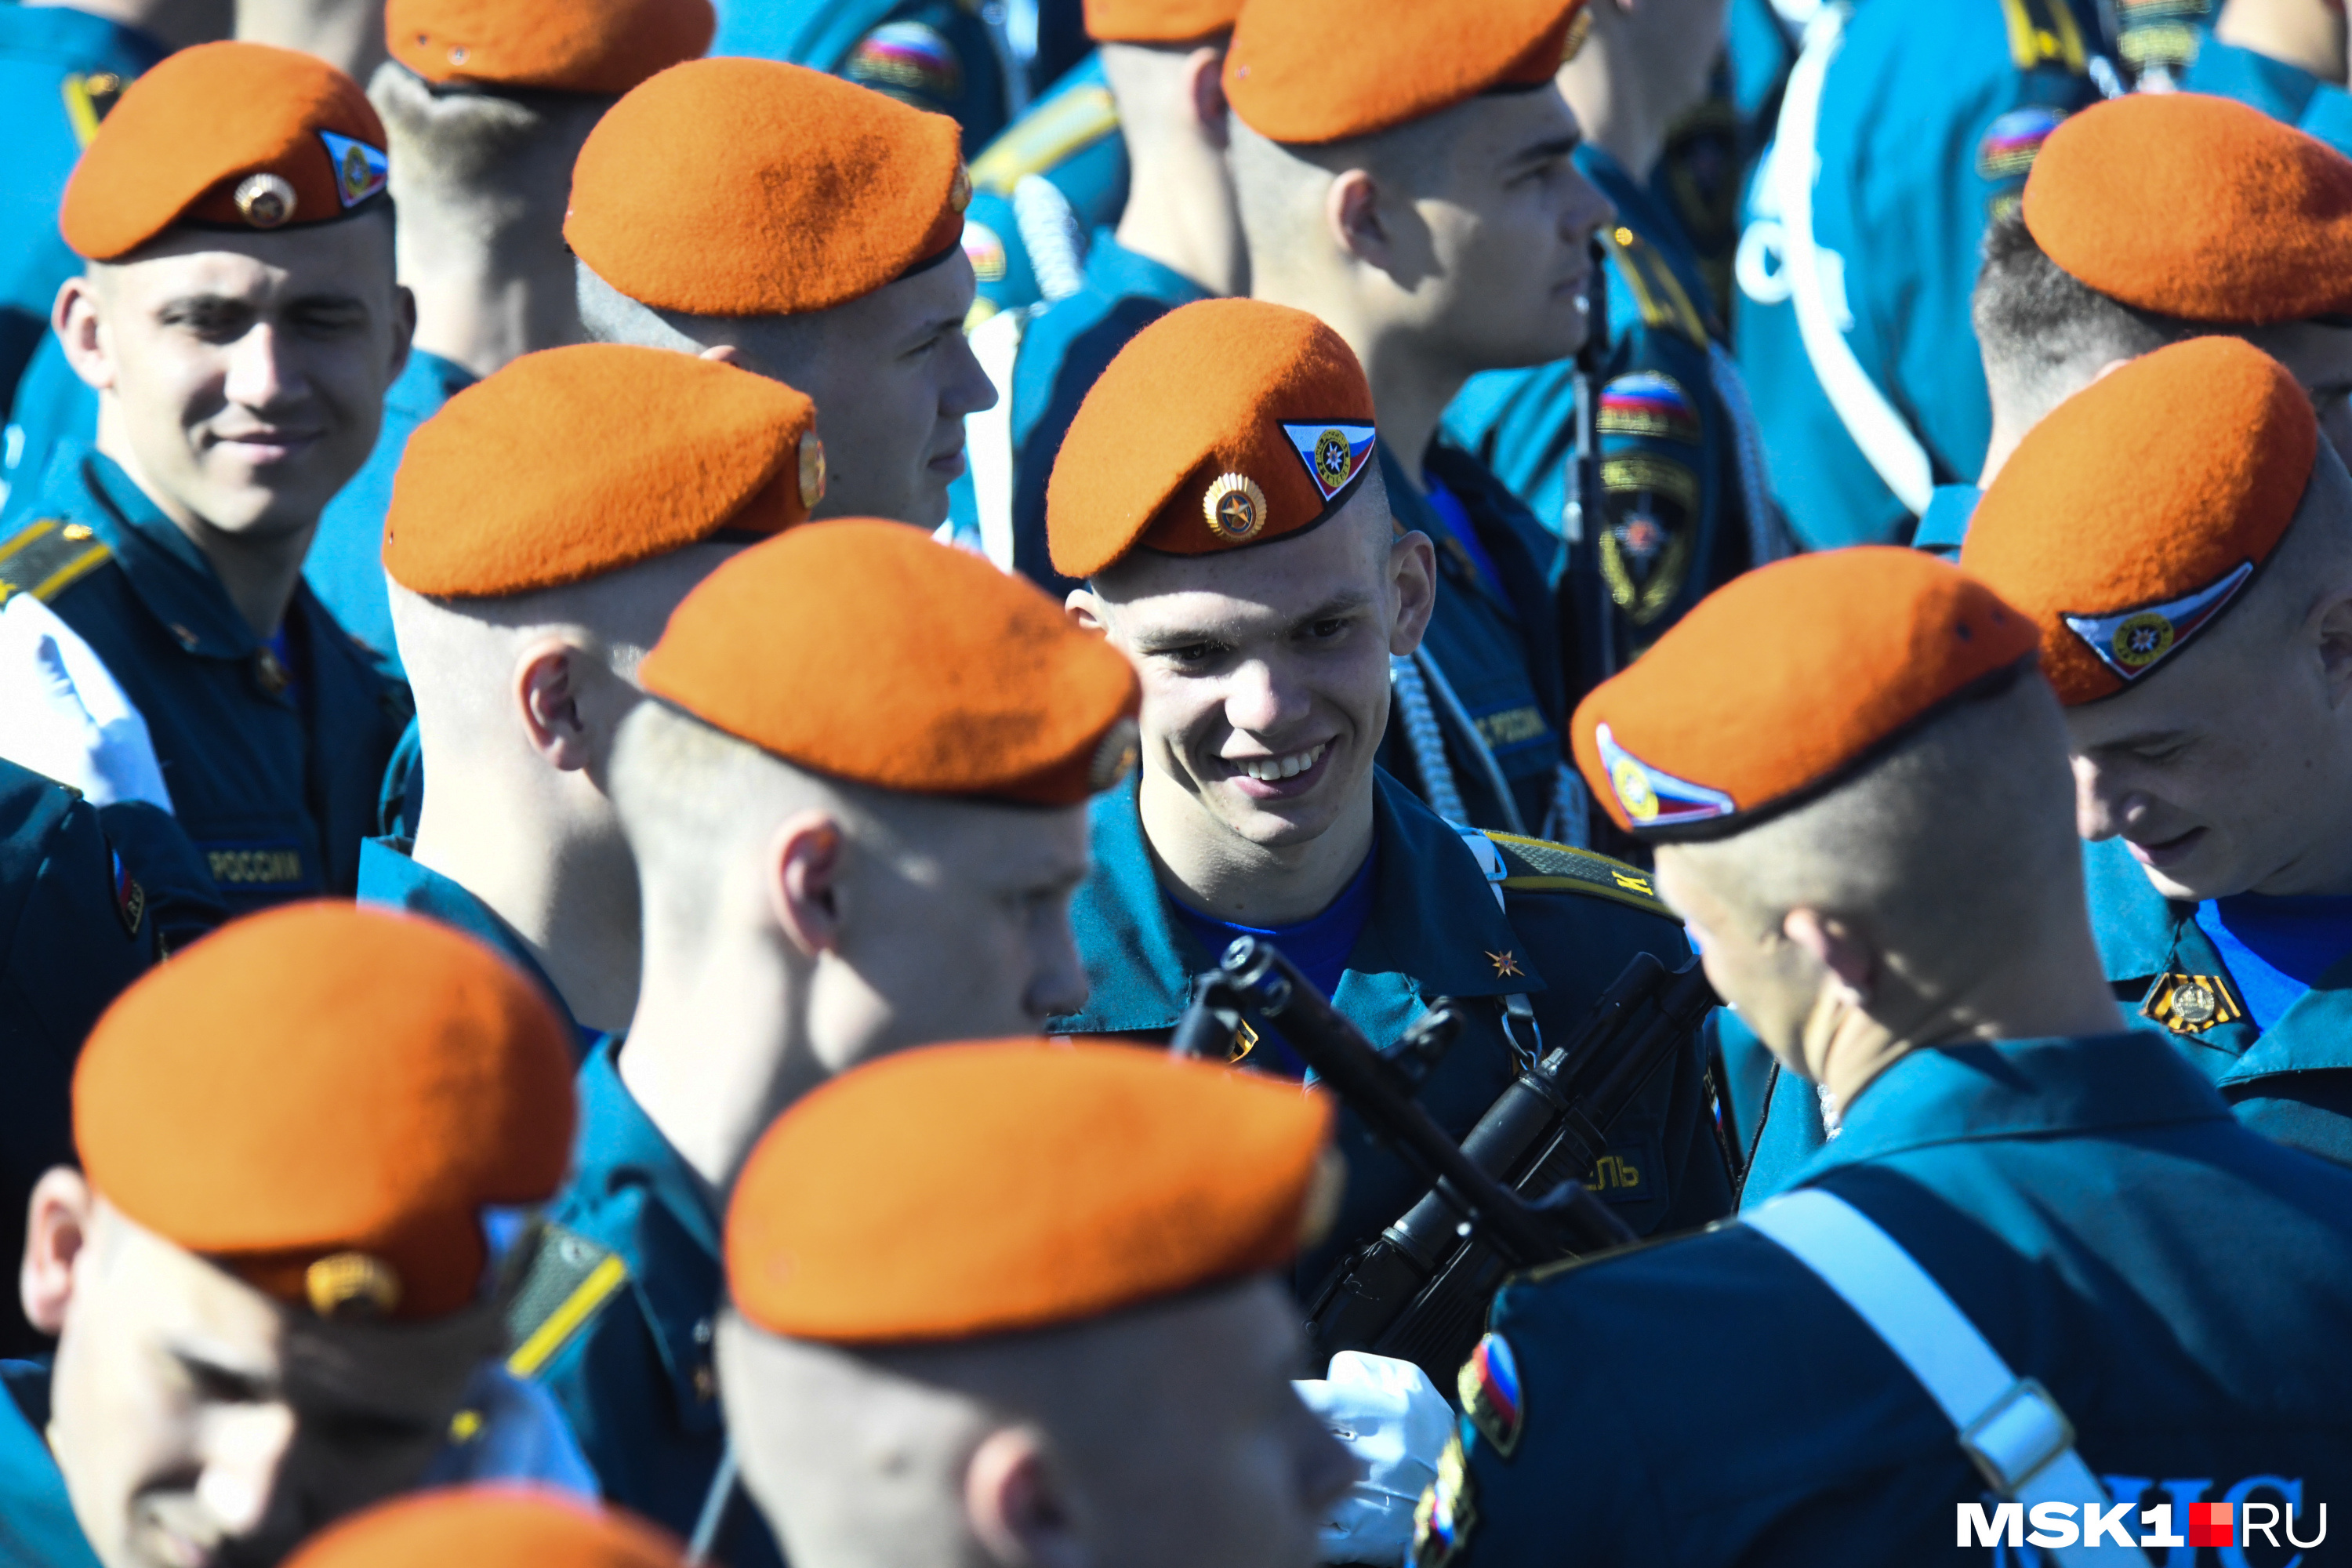 Военнослужащие, участвовавшие в параде, были на Красной площади с самого утра